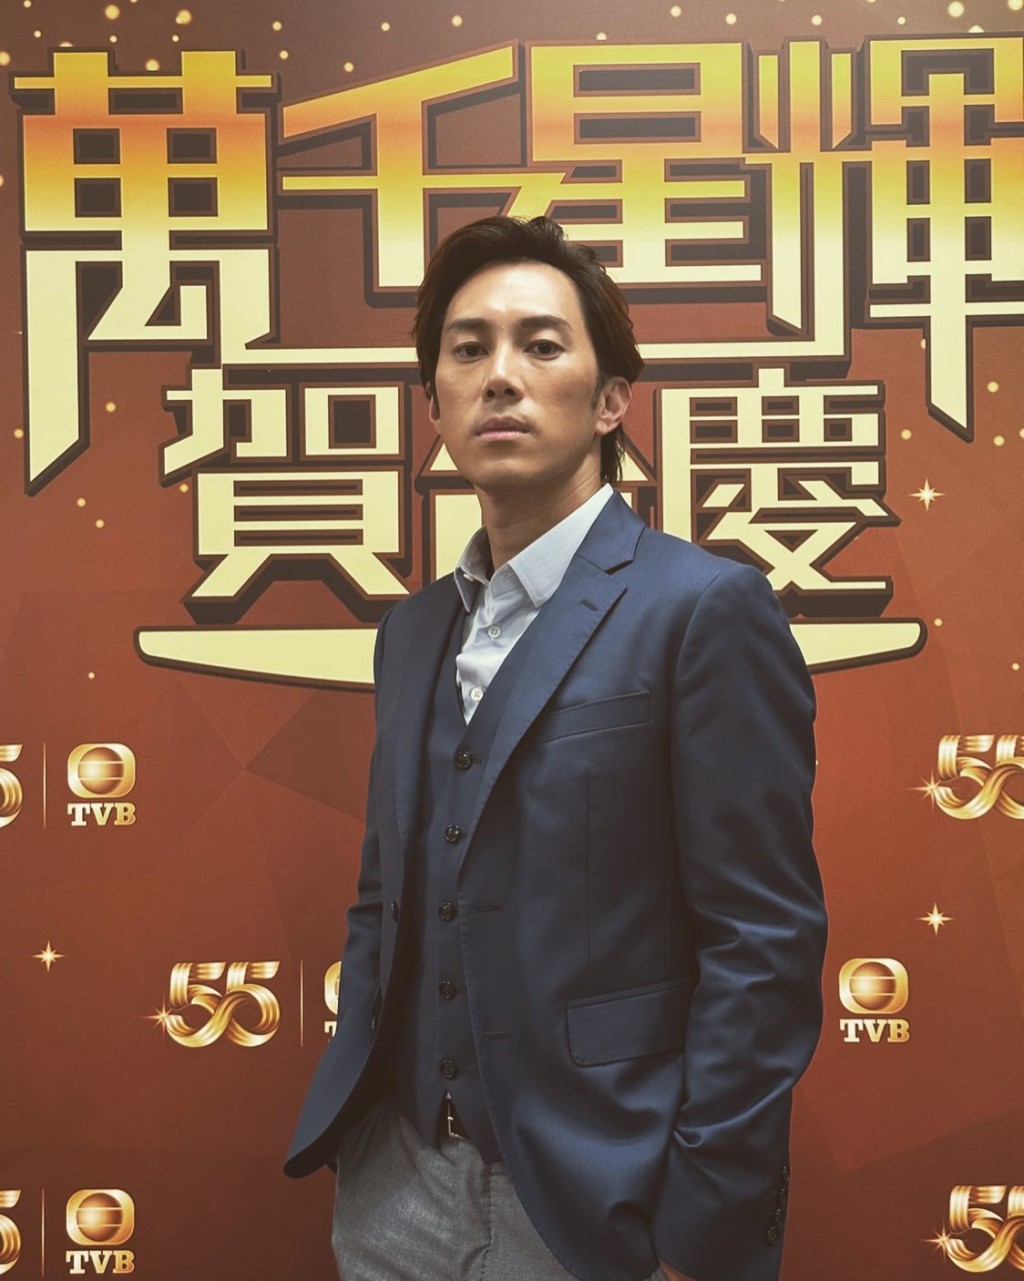 麦秋成2019年签约TVB转战幕前。